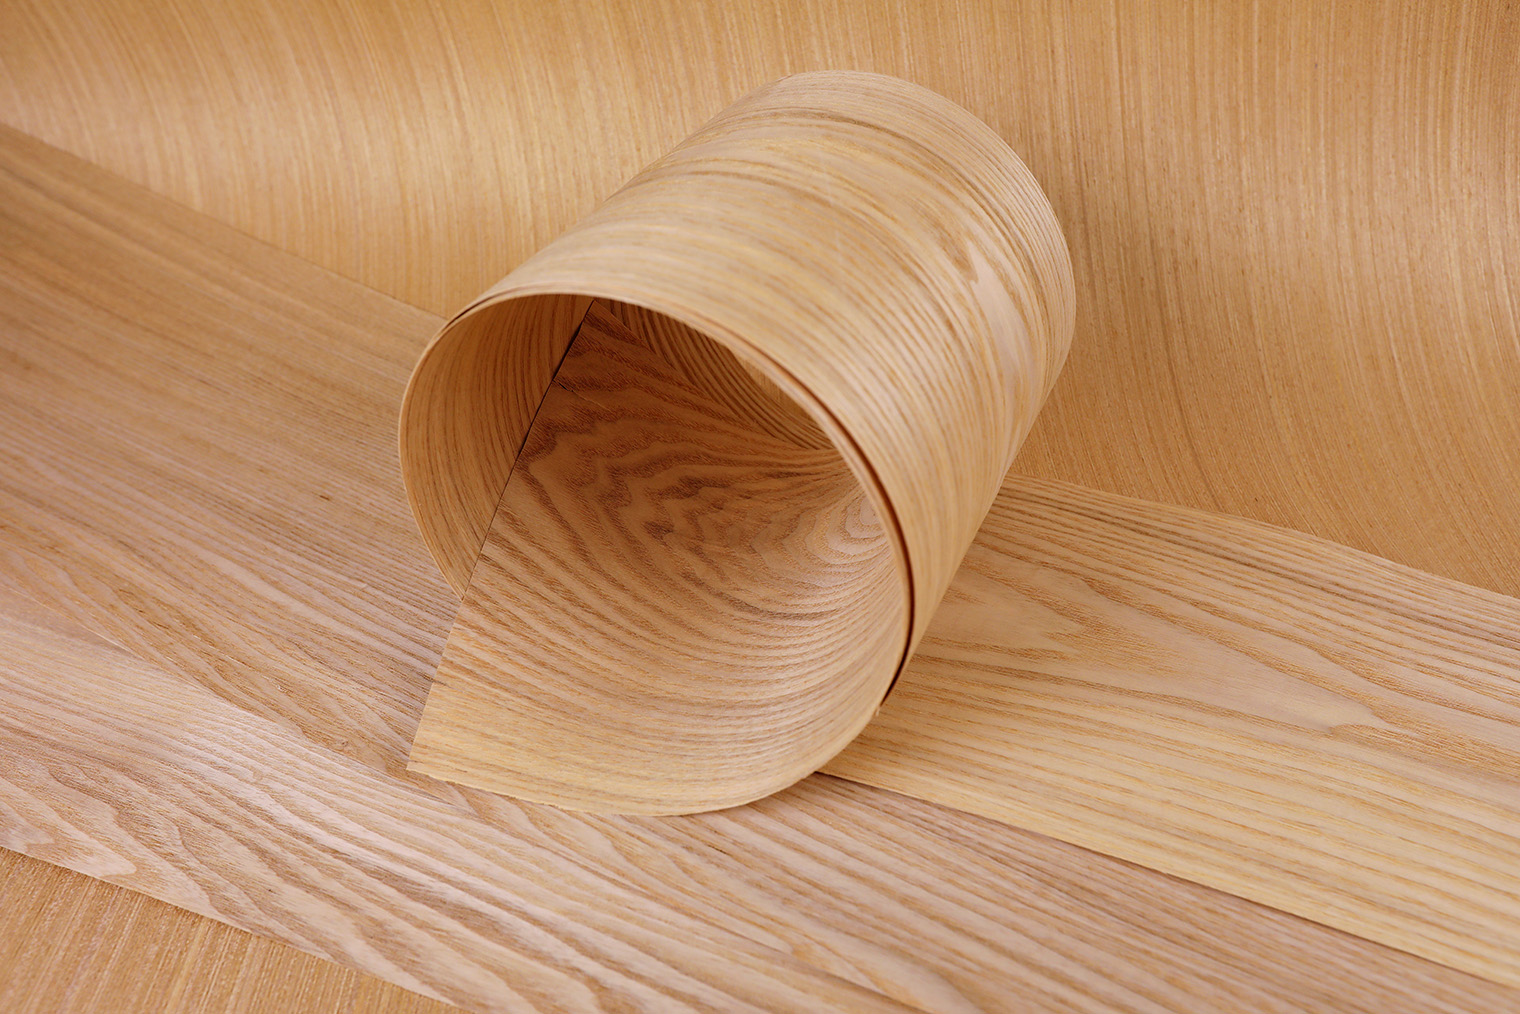 Шпон — тонкая полоска древесины, которой облицовывают изделия из других материалов. Фотография: Sergey Usinkov / Shutterstock